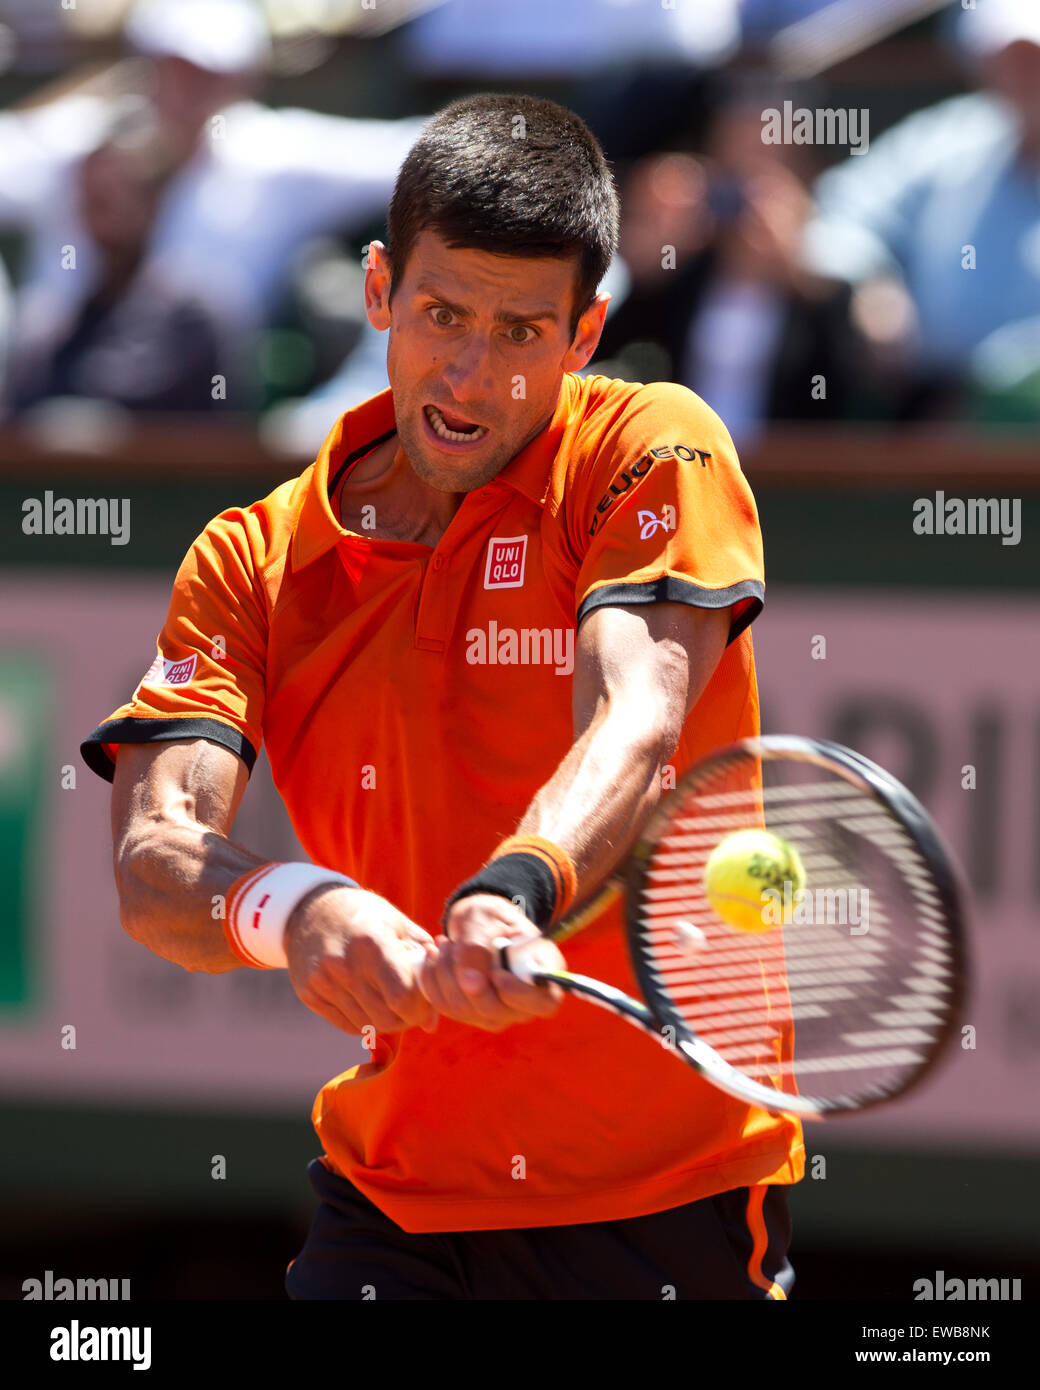 Novak Djokovic (SRB) en action à l'Open de France 2015 Banque D'Images